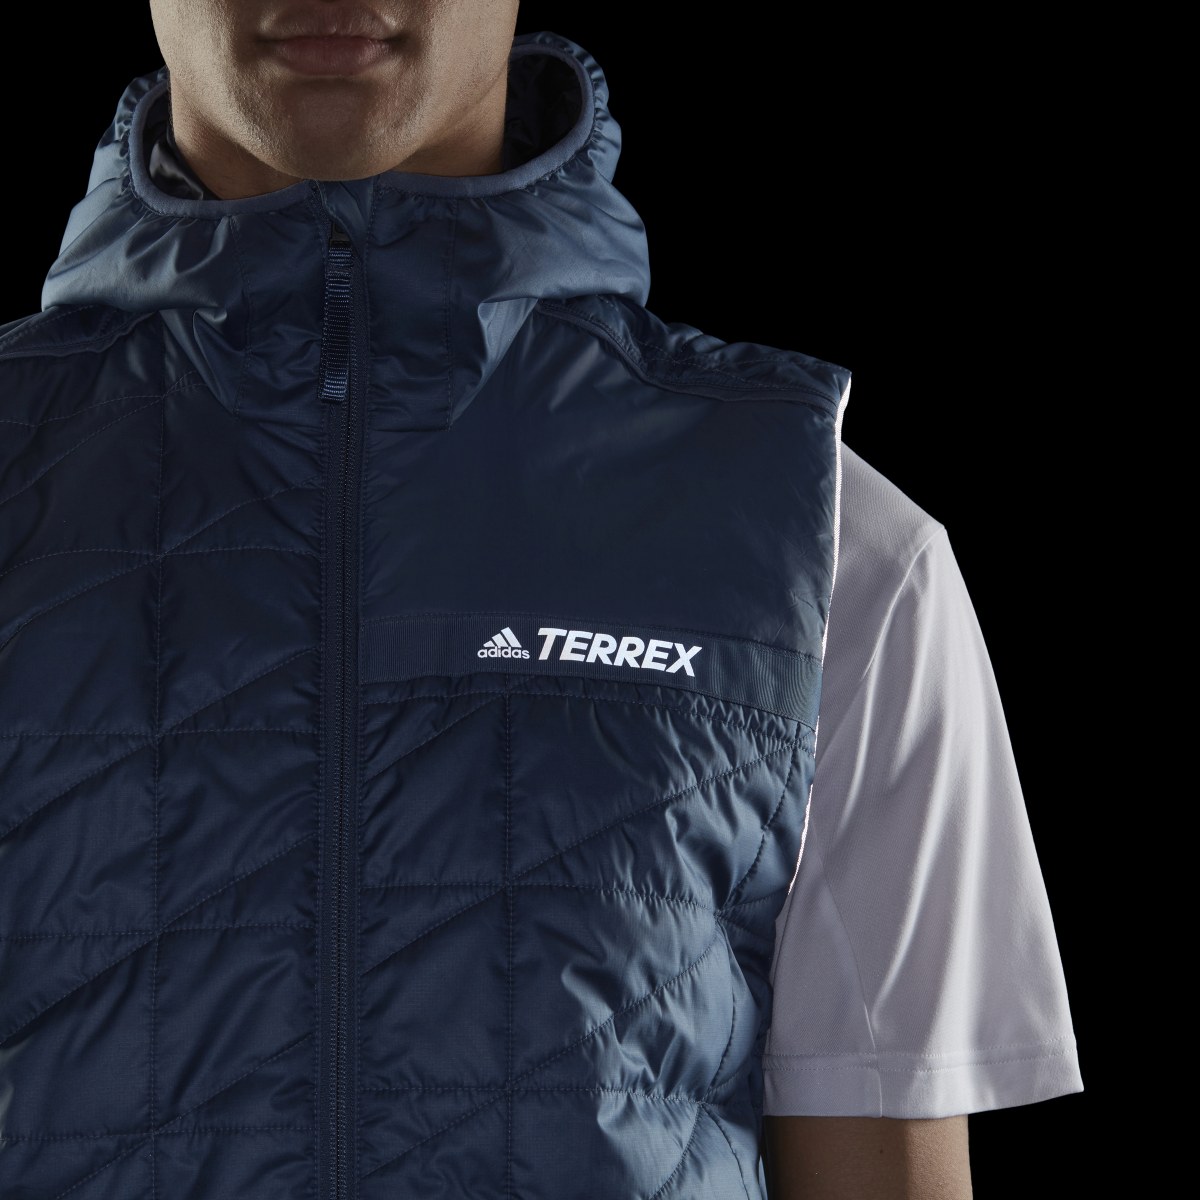 Adidas Terrex Multi Insulated Vest. 6